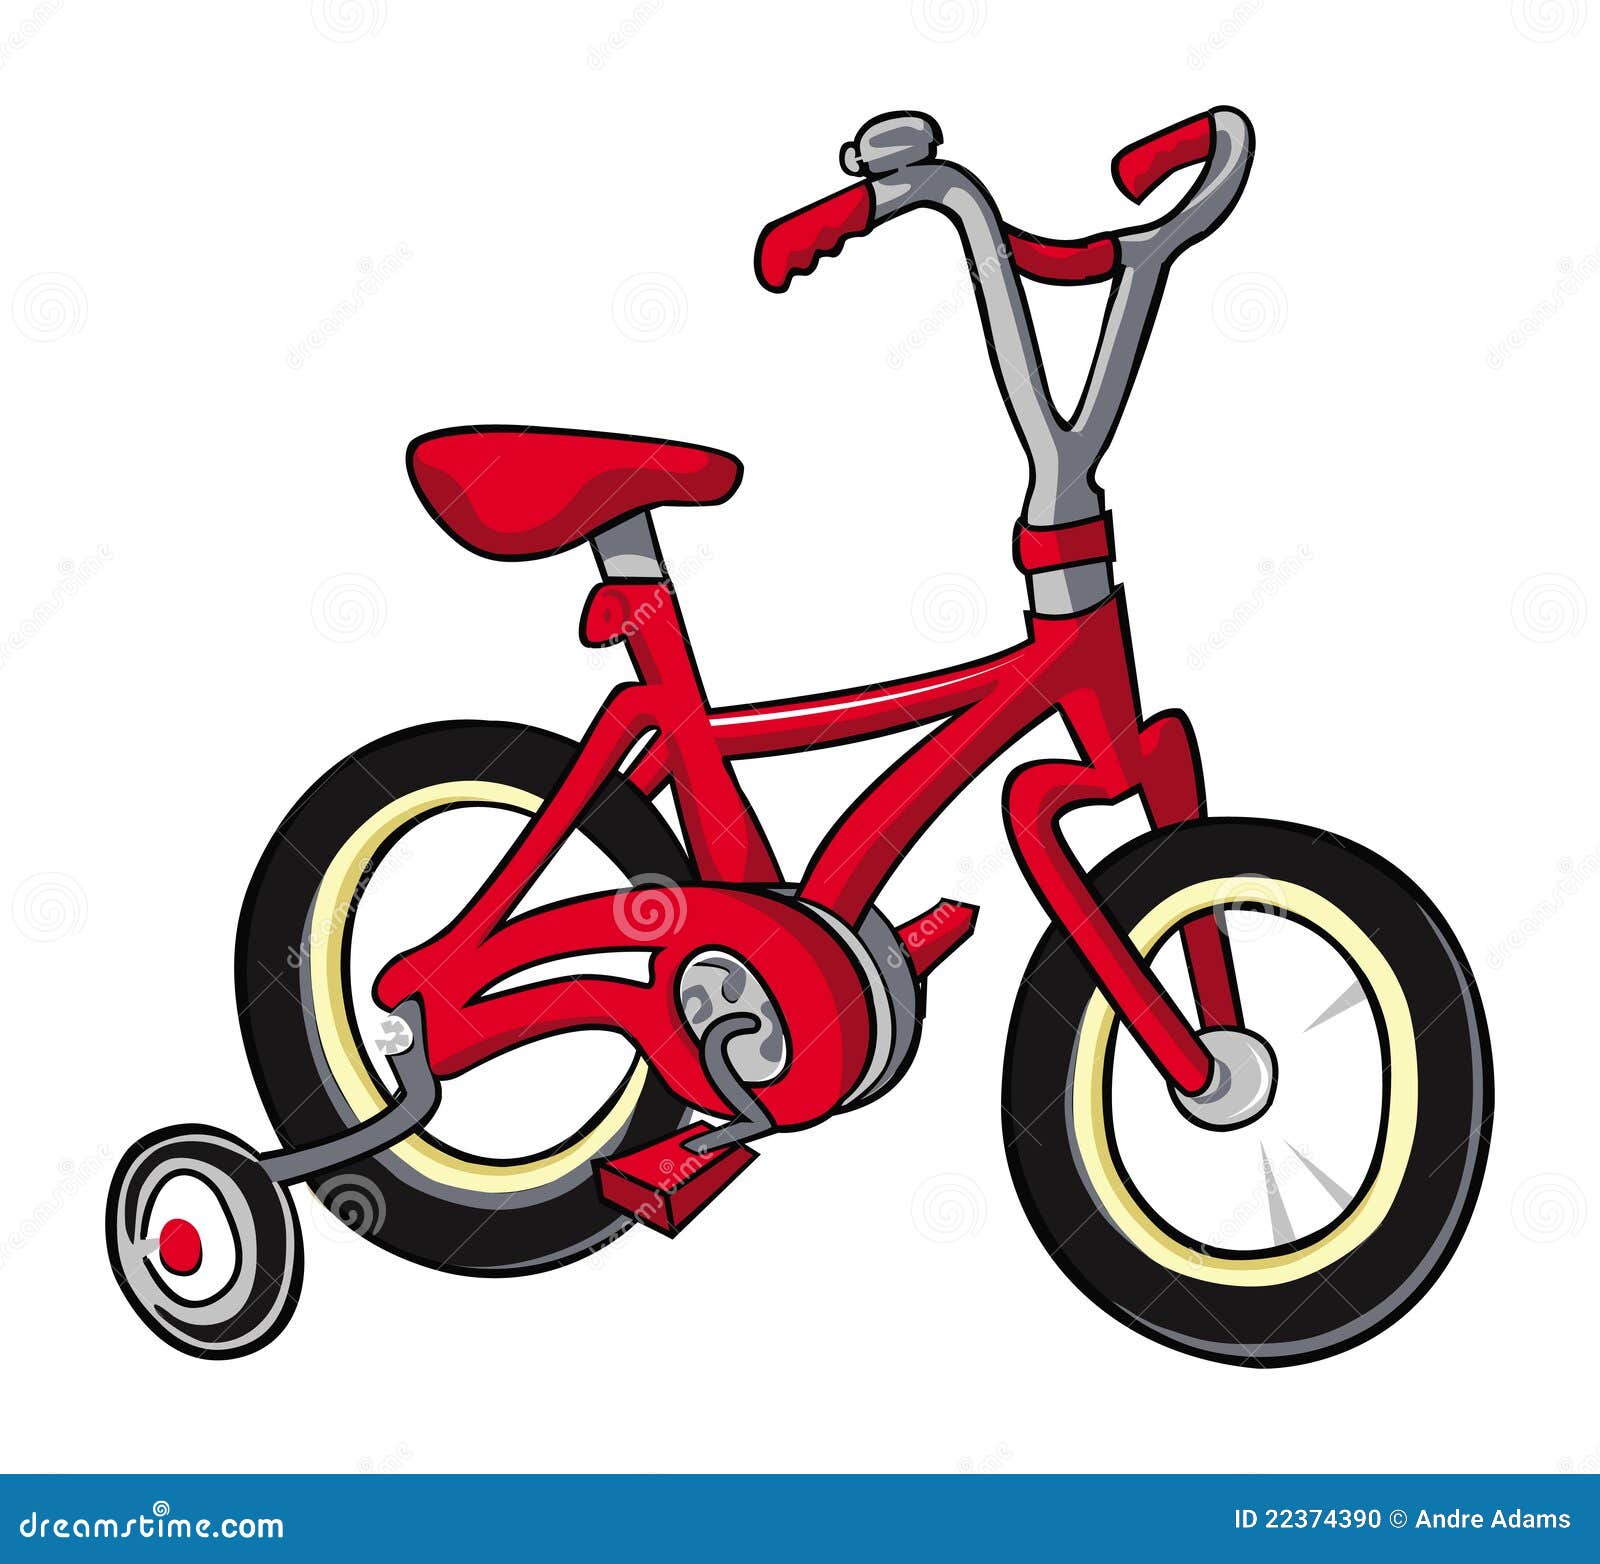 erts zich zorgen maken diepte Bike red stock vector. Illustration of cartoon, bicycle - 22374390